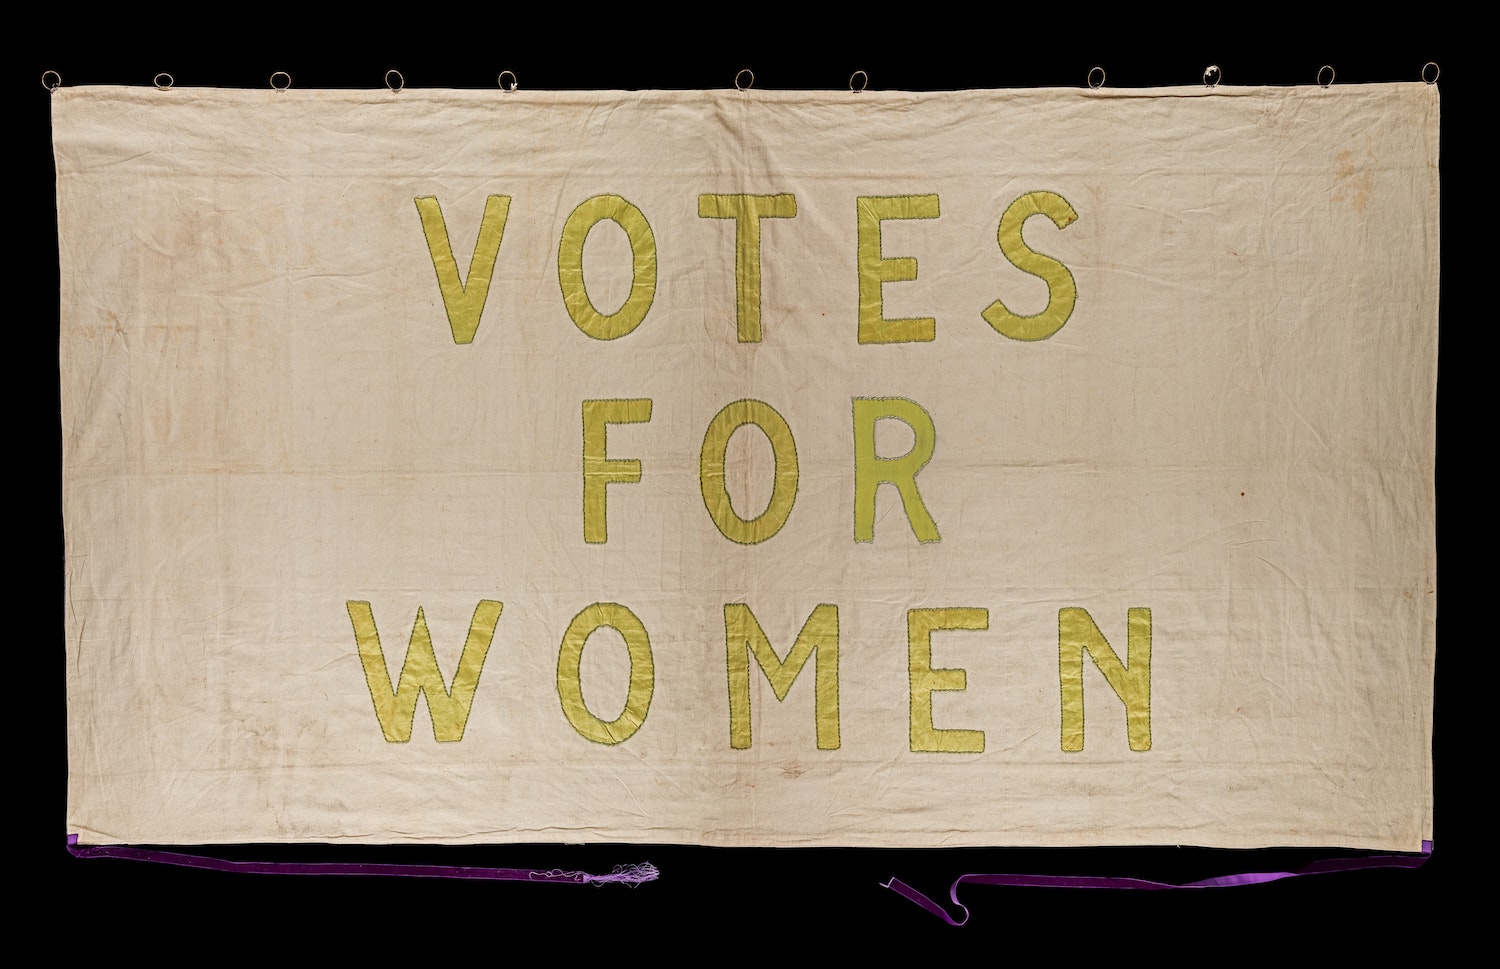 Votate solo donne, elezioni comunali di genova